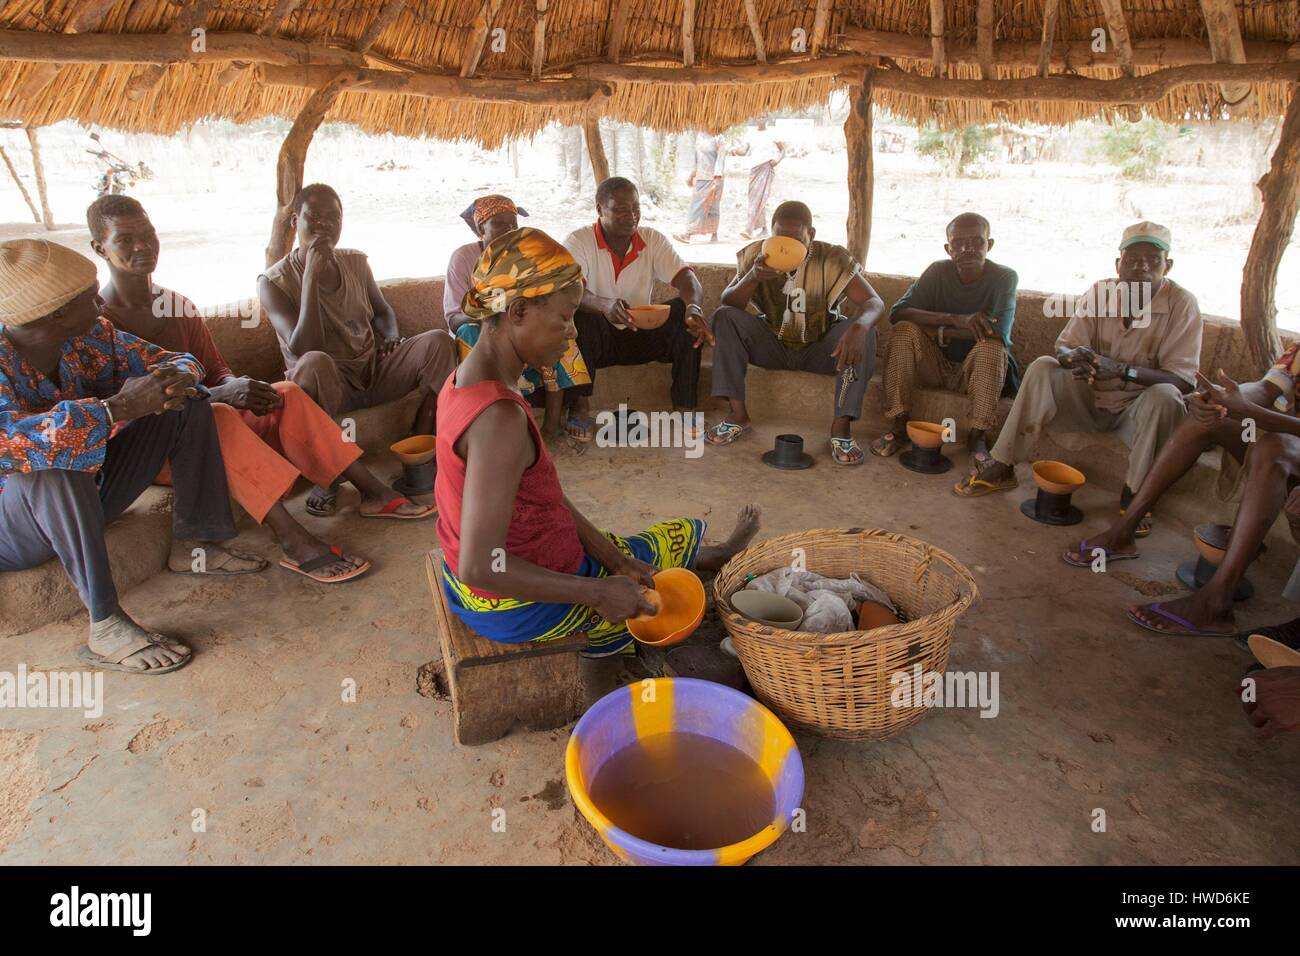 Le Togo, région du nord, les Tamberma consommer de grandes quantités de tchoukoutou, bière de mil Banque D'Images